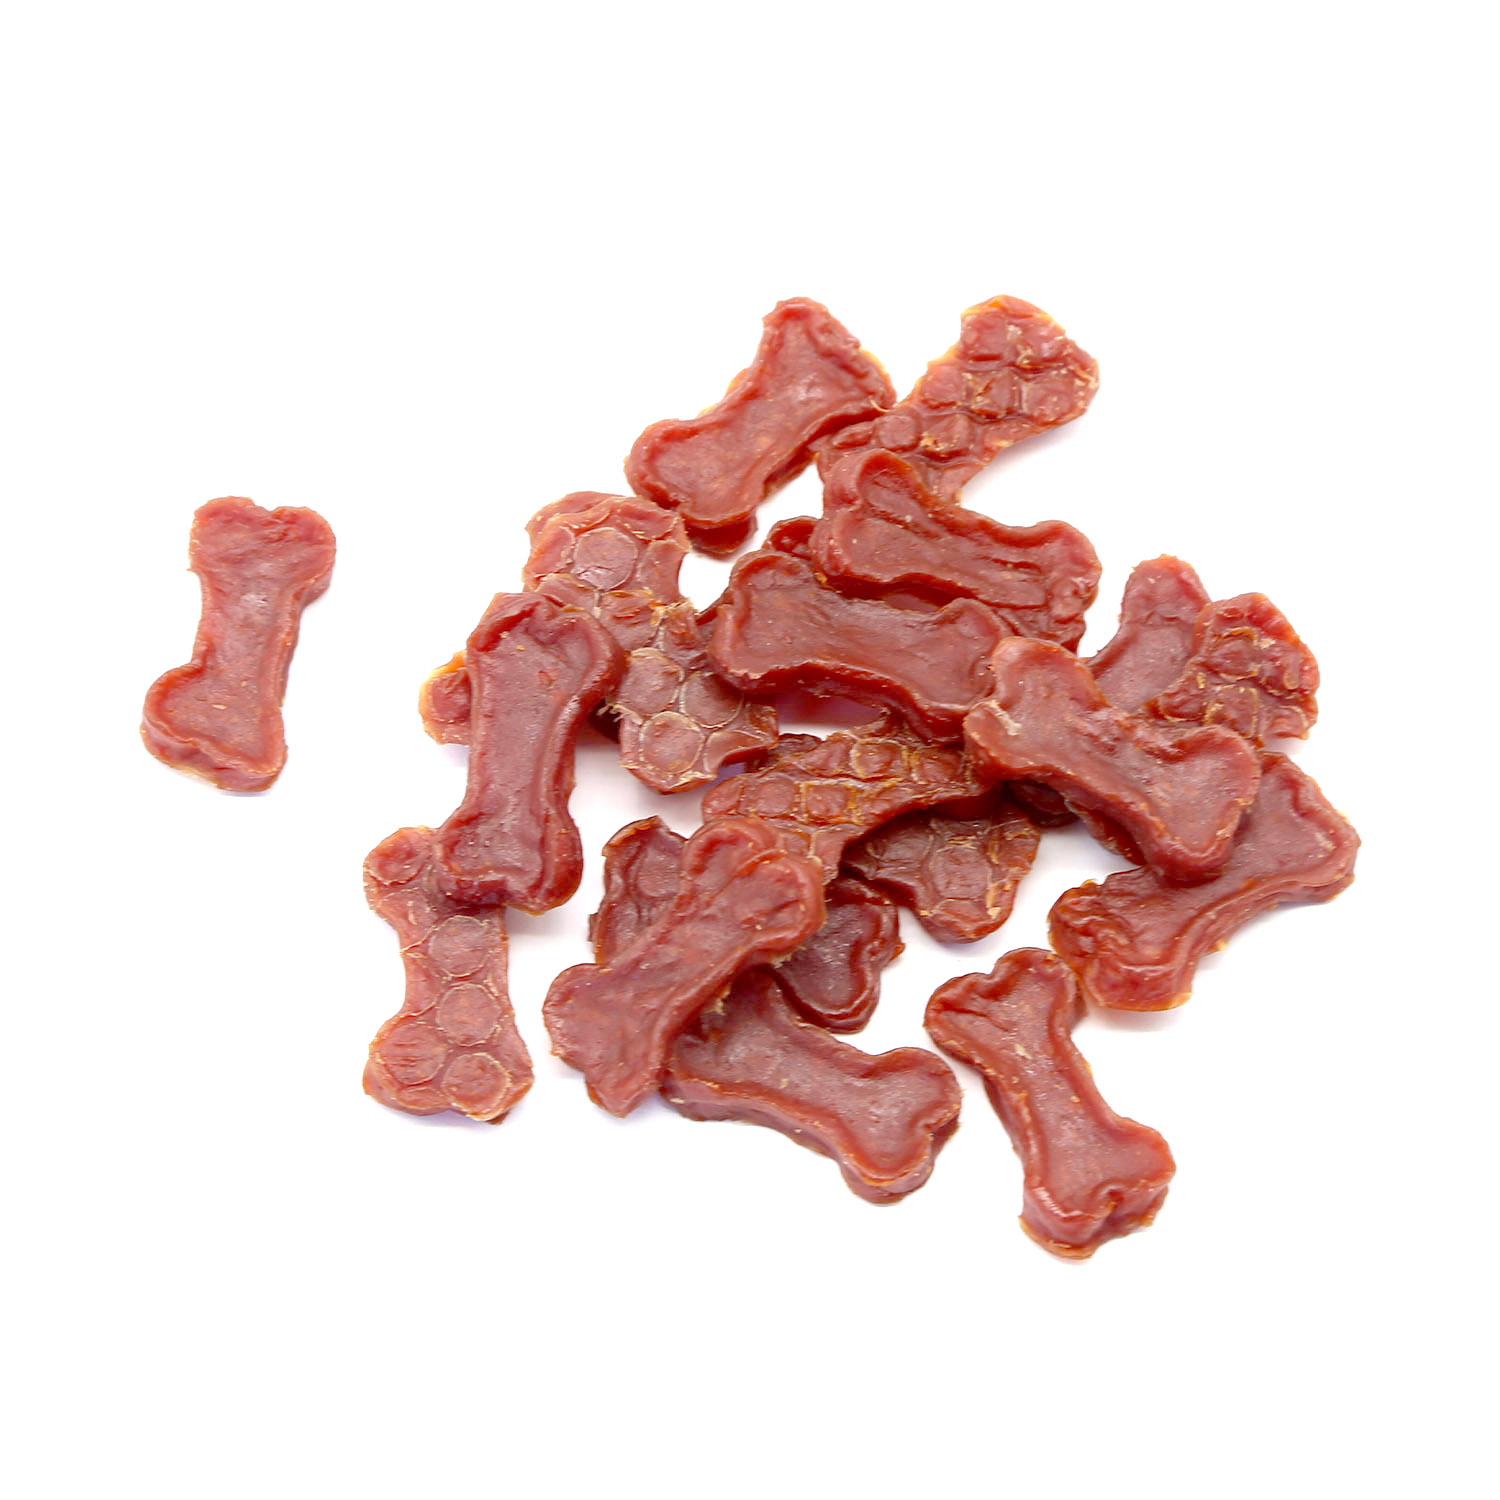 OEM dog chew treats bone shaped chicken meat